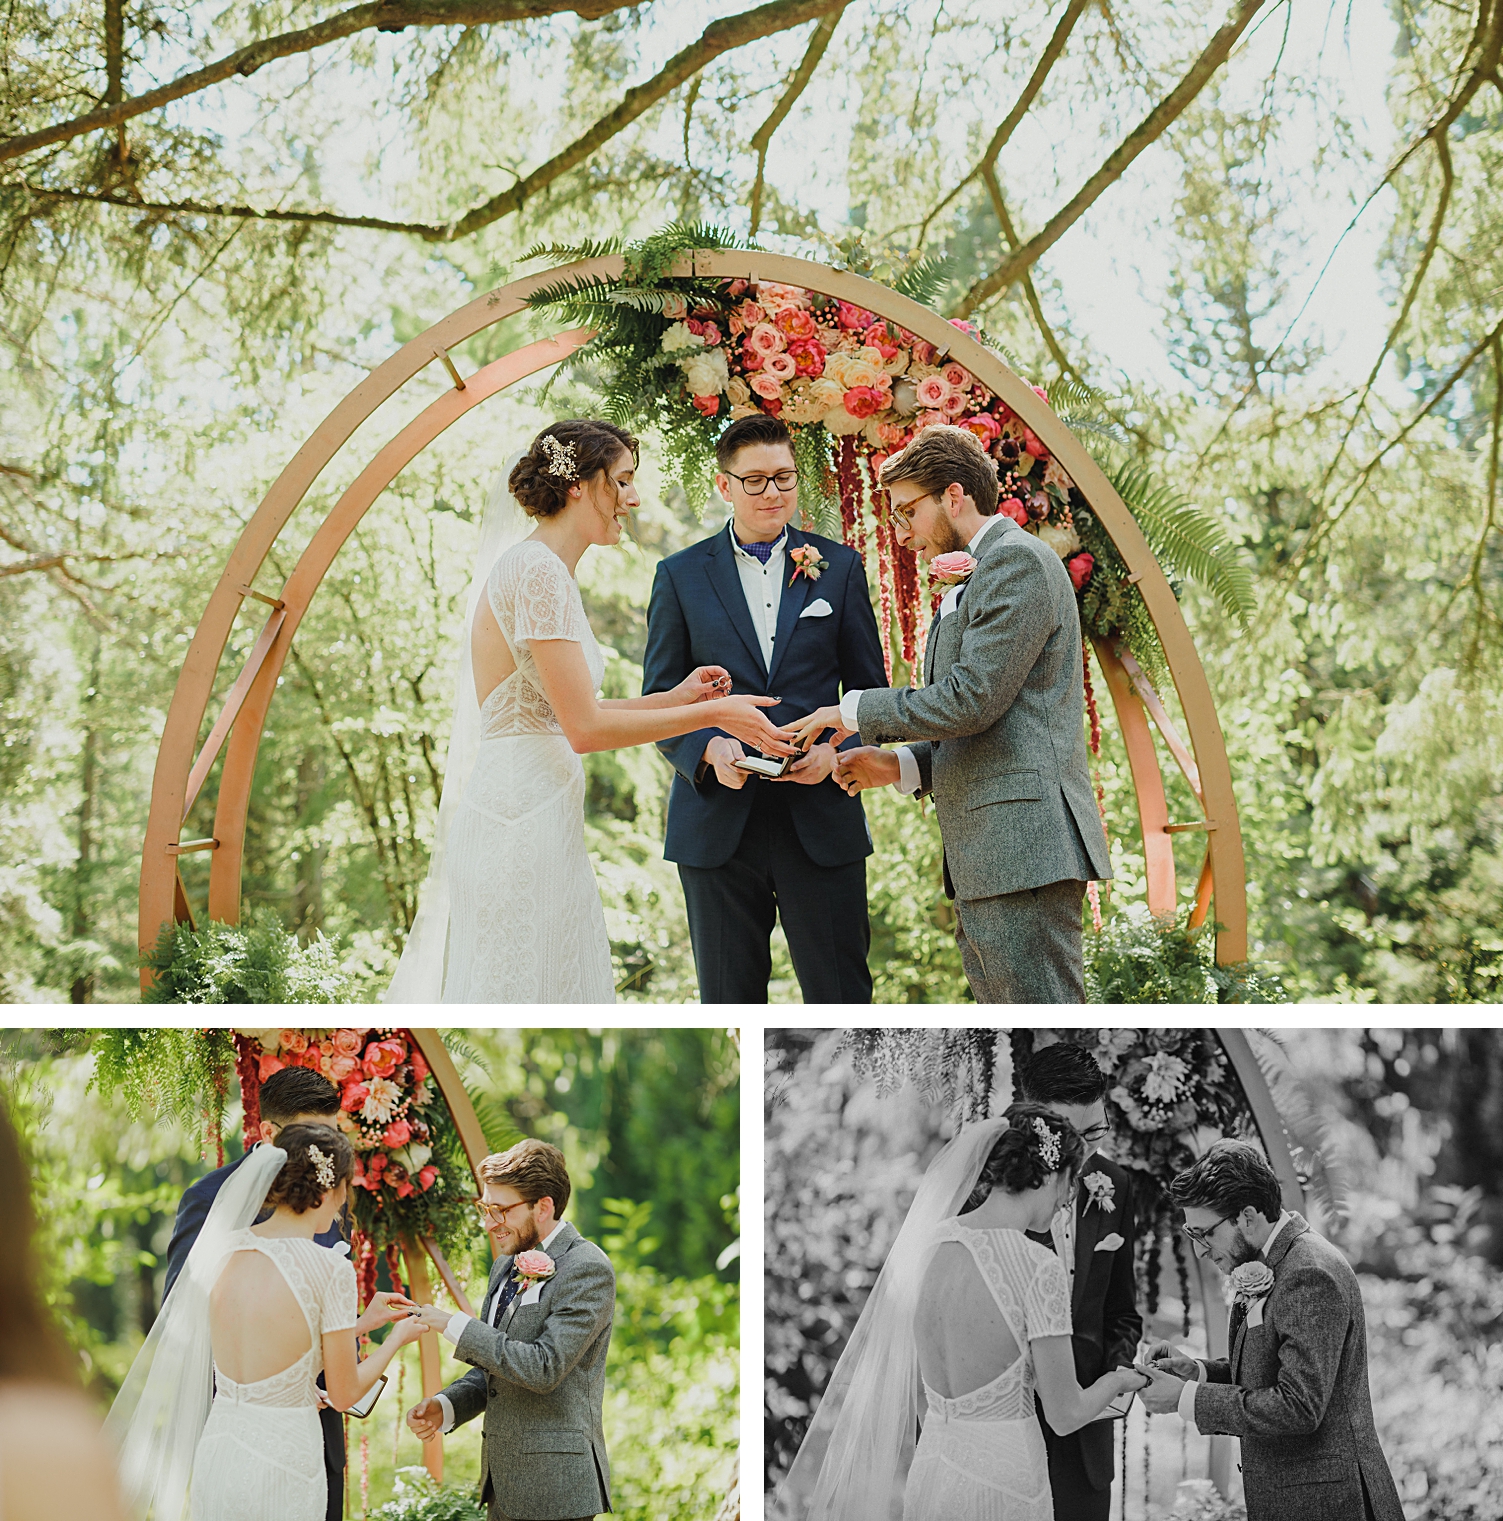 Portland Oregon wedding at Hoyt Arboretum ring exchange